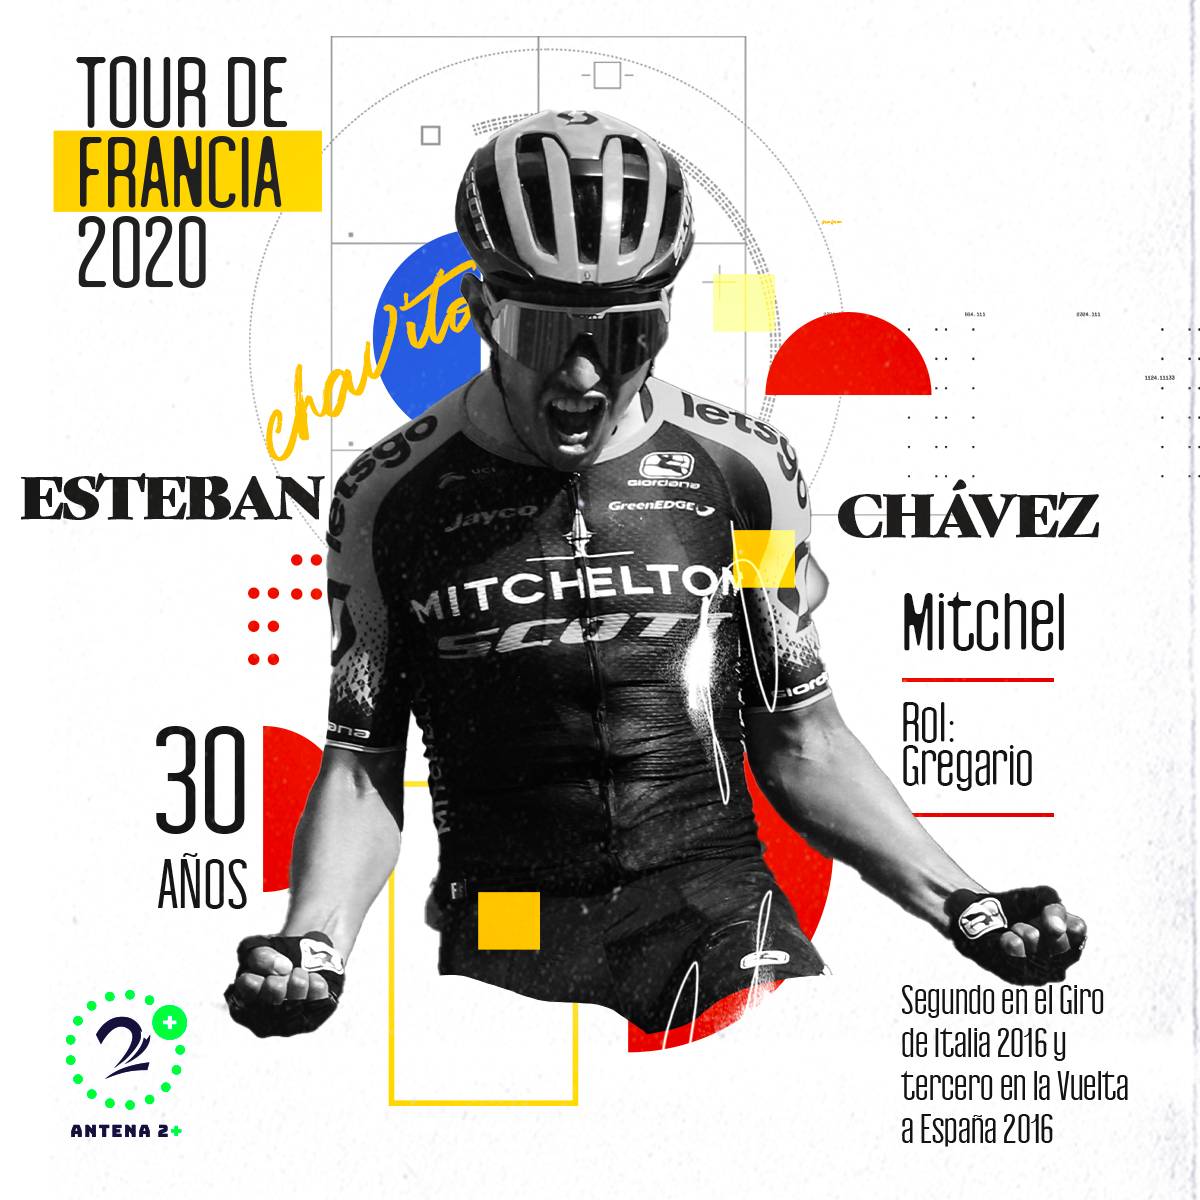 Esteban Chaves, Tour de Francia 2020